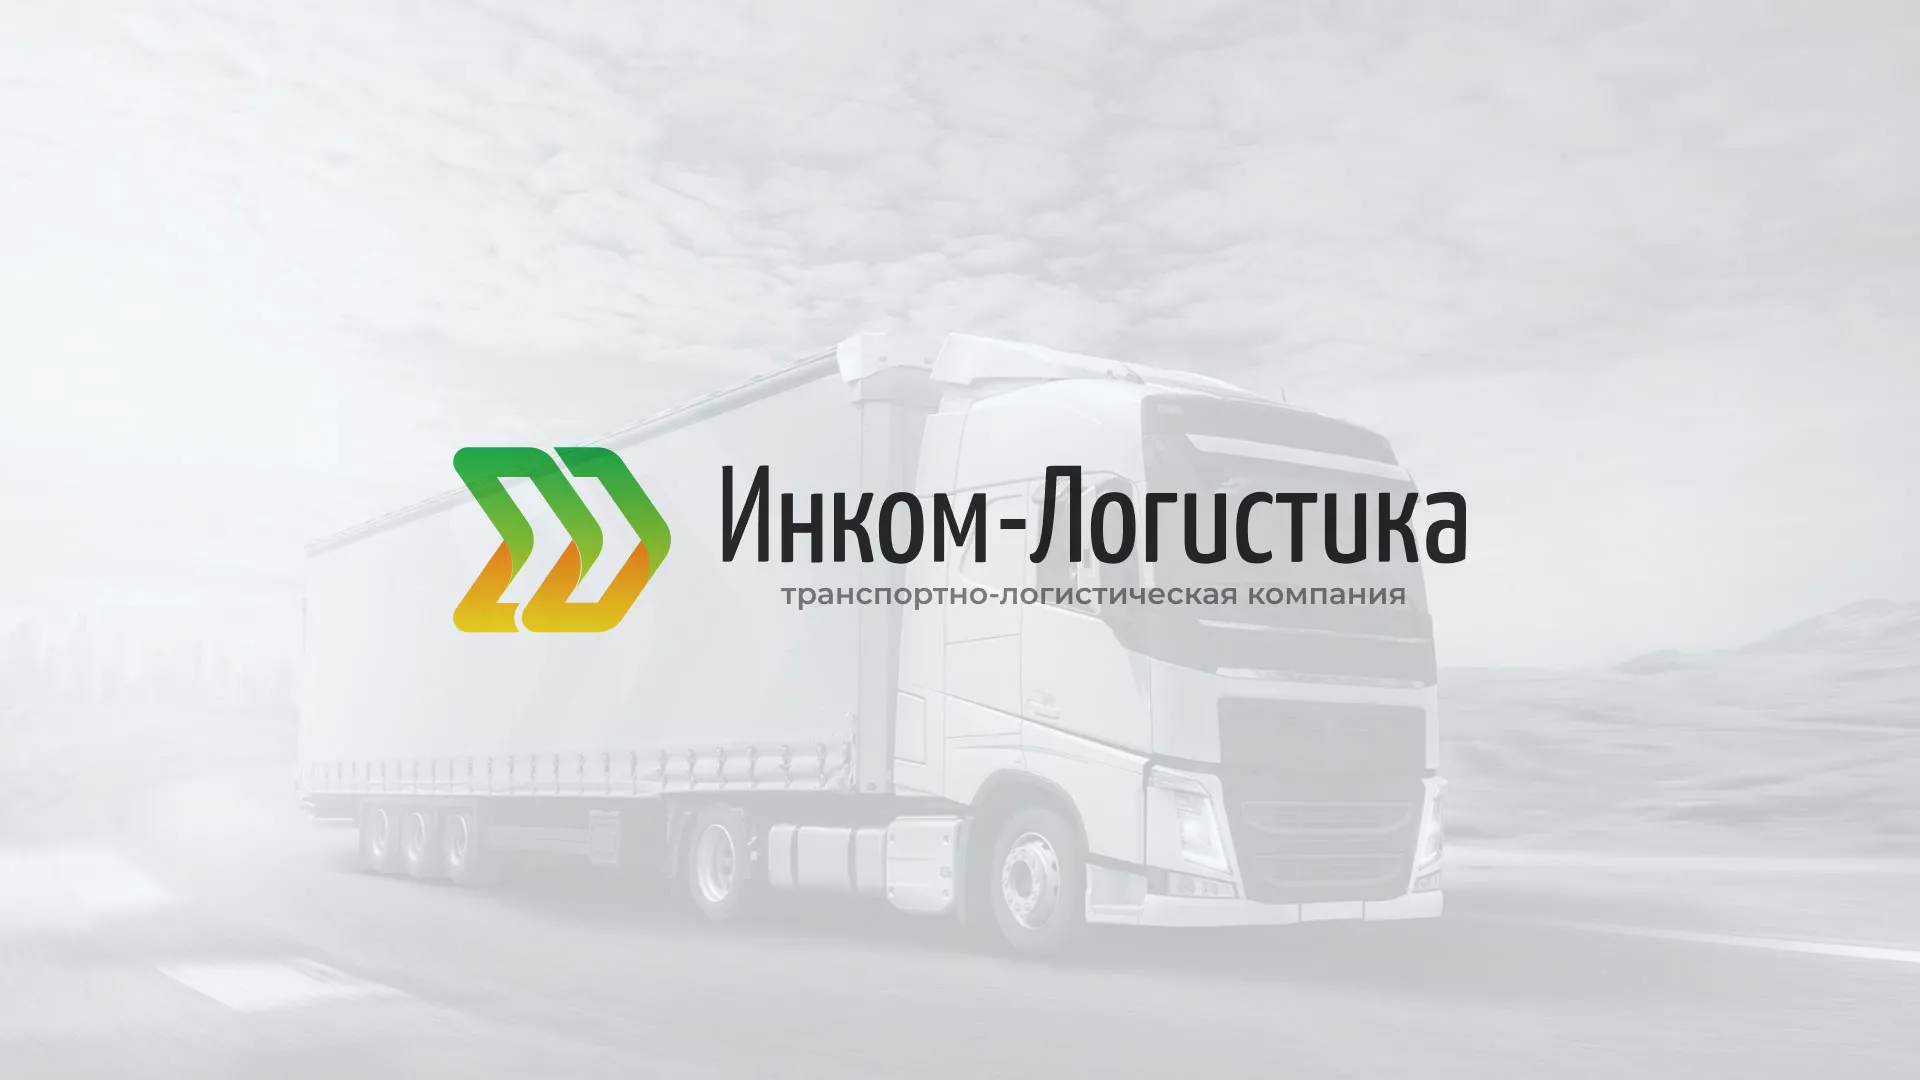 Разработка логотипа и сайта компании «Инком-Логистика» в Соль-Илецке